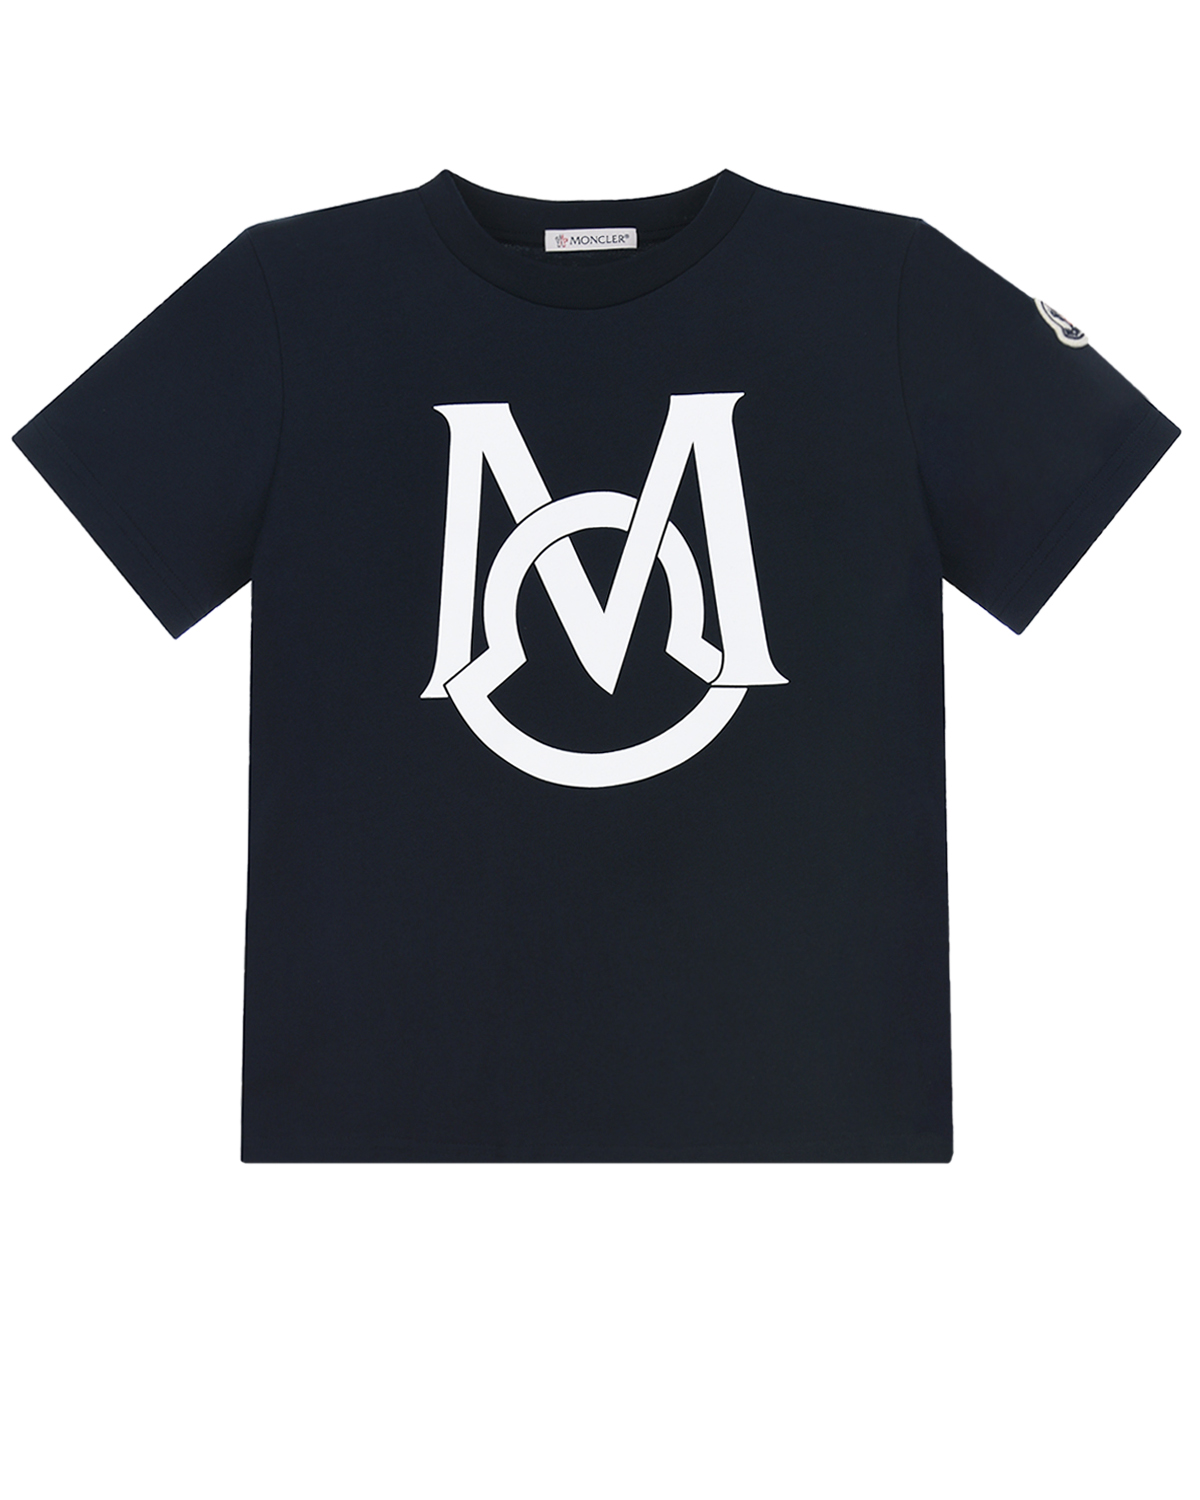 Где купить Темно-синяя футболка с белым логотипом Moncler детское Moncler 